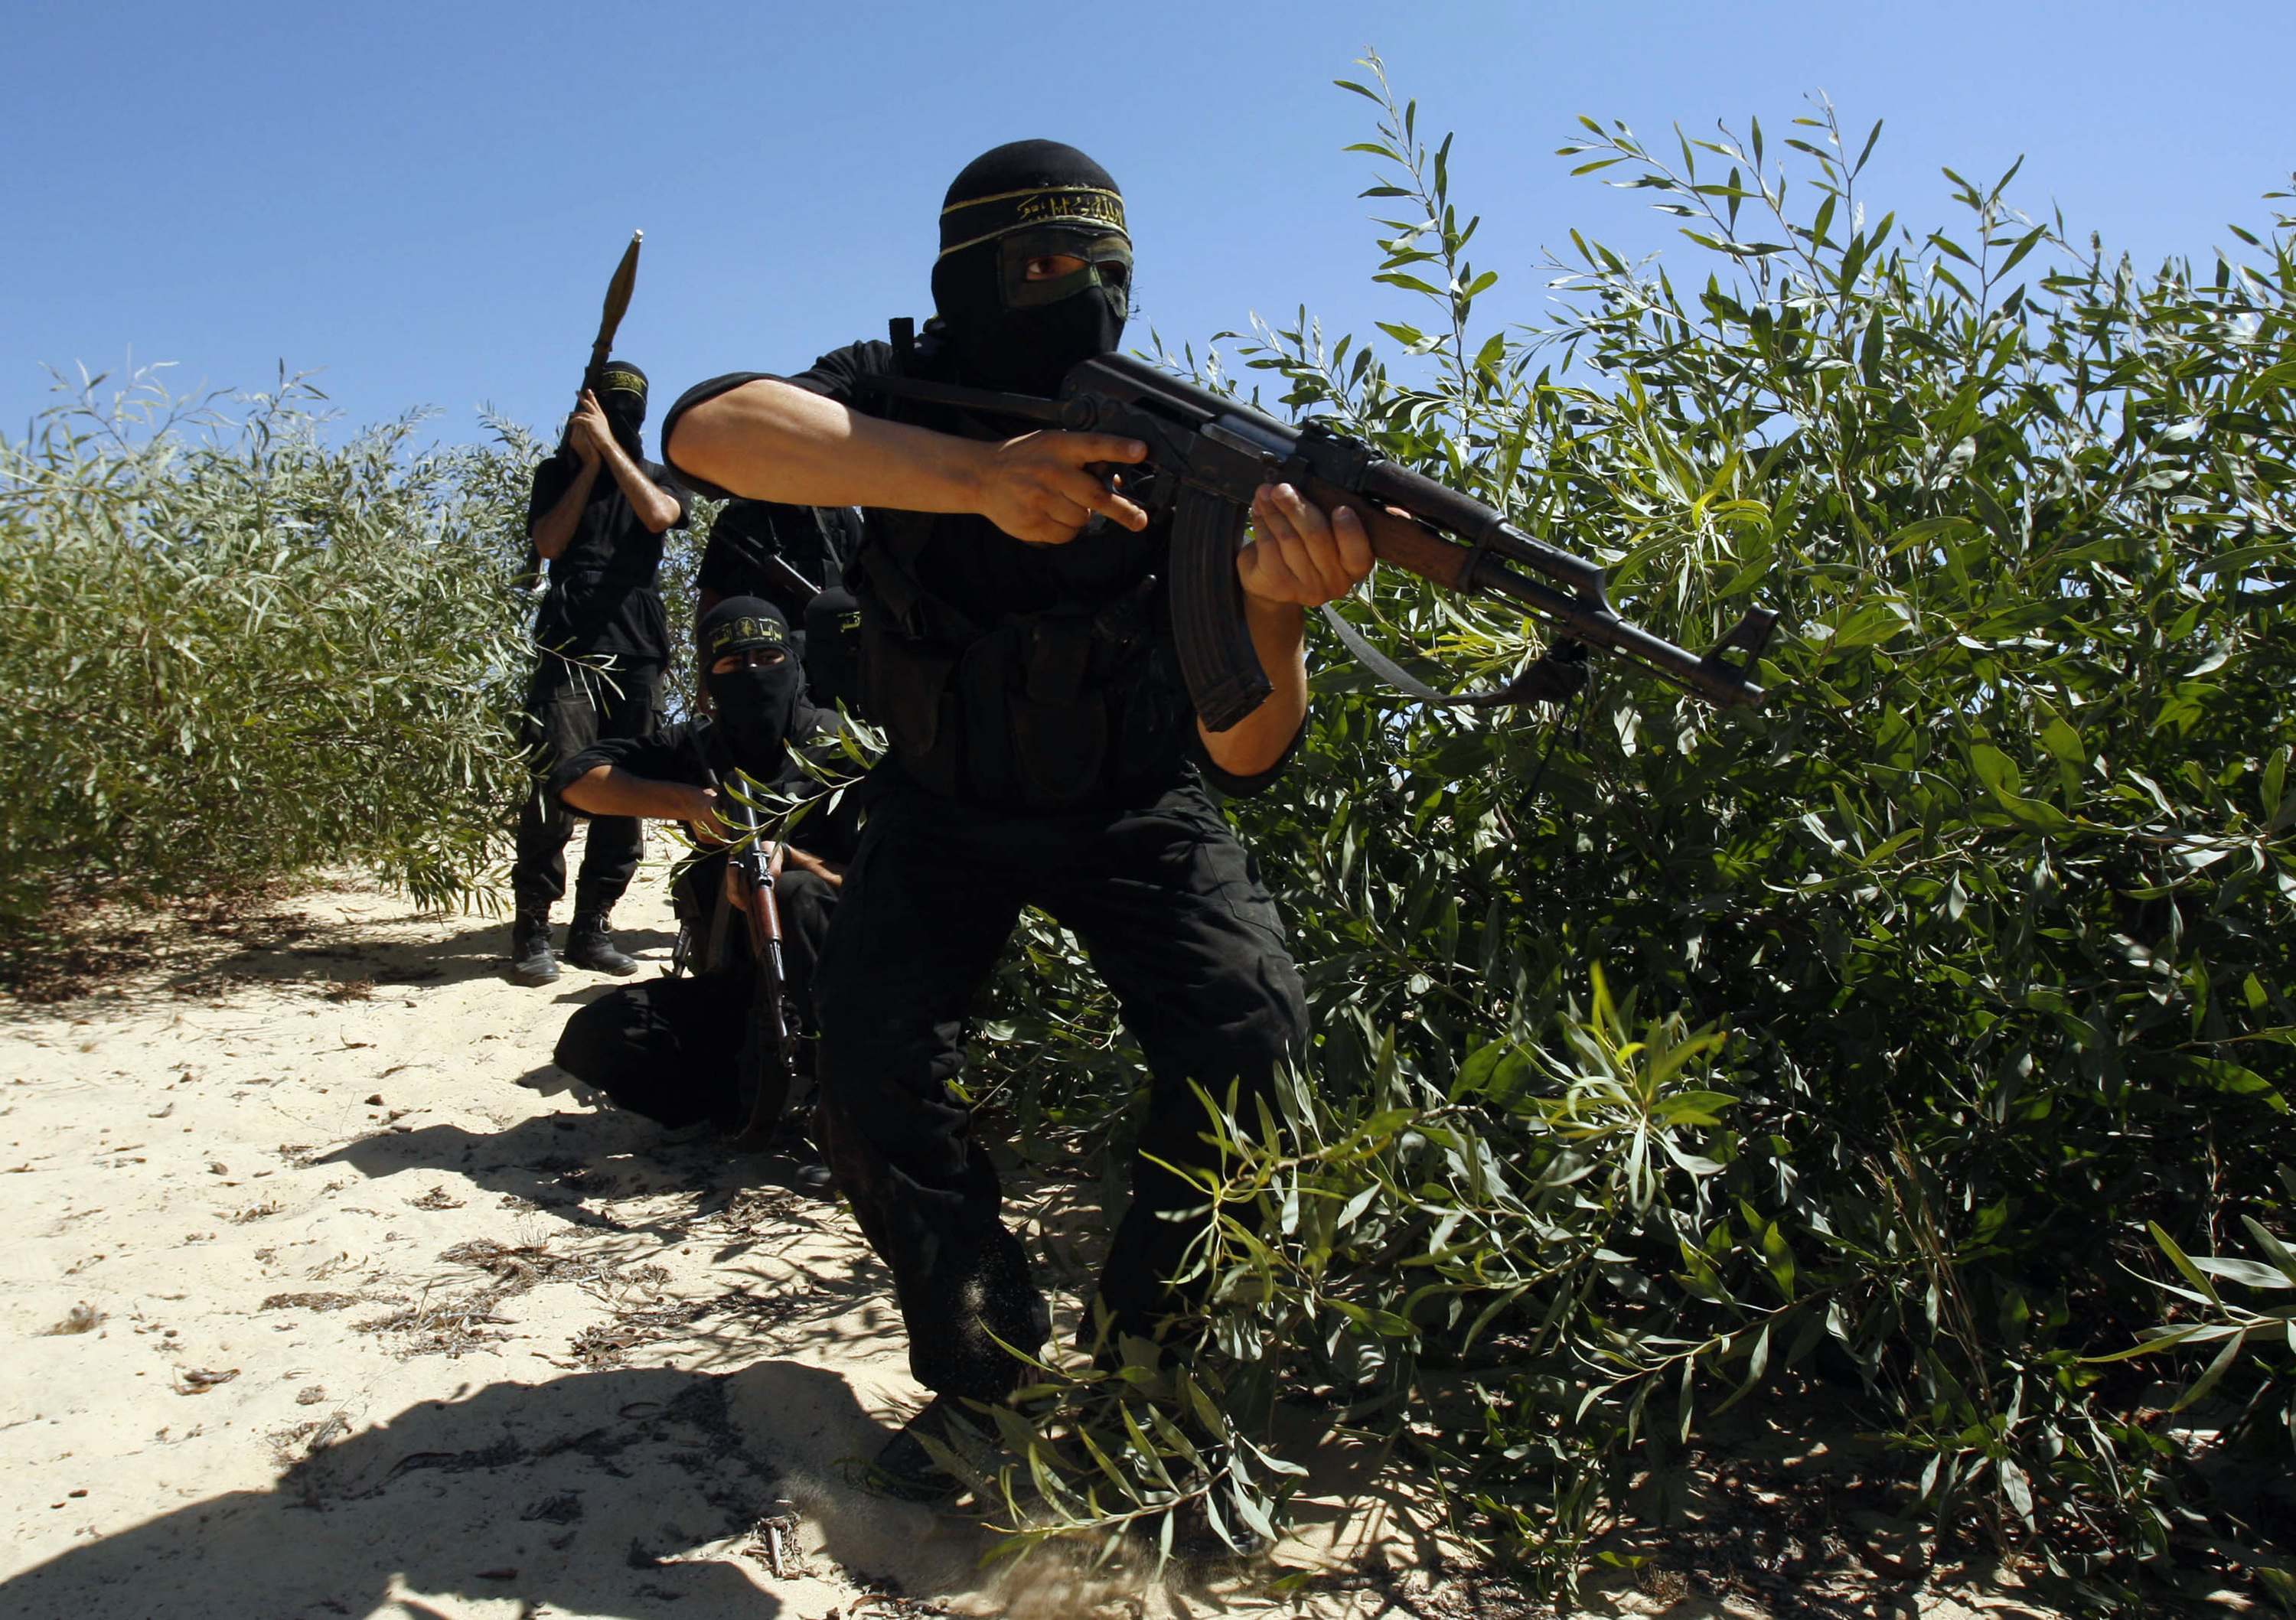 Χαμάς: “Οι επιθέσεις θα συνεχιστούν, οι συνομιλίες έχουν αποτύχει”